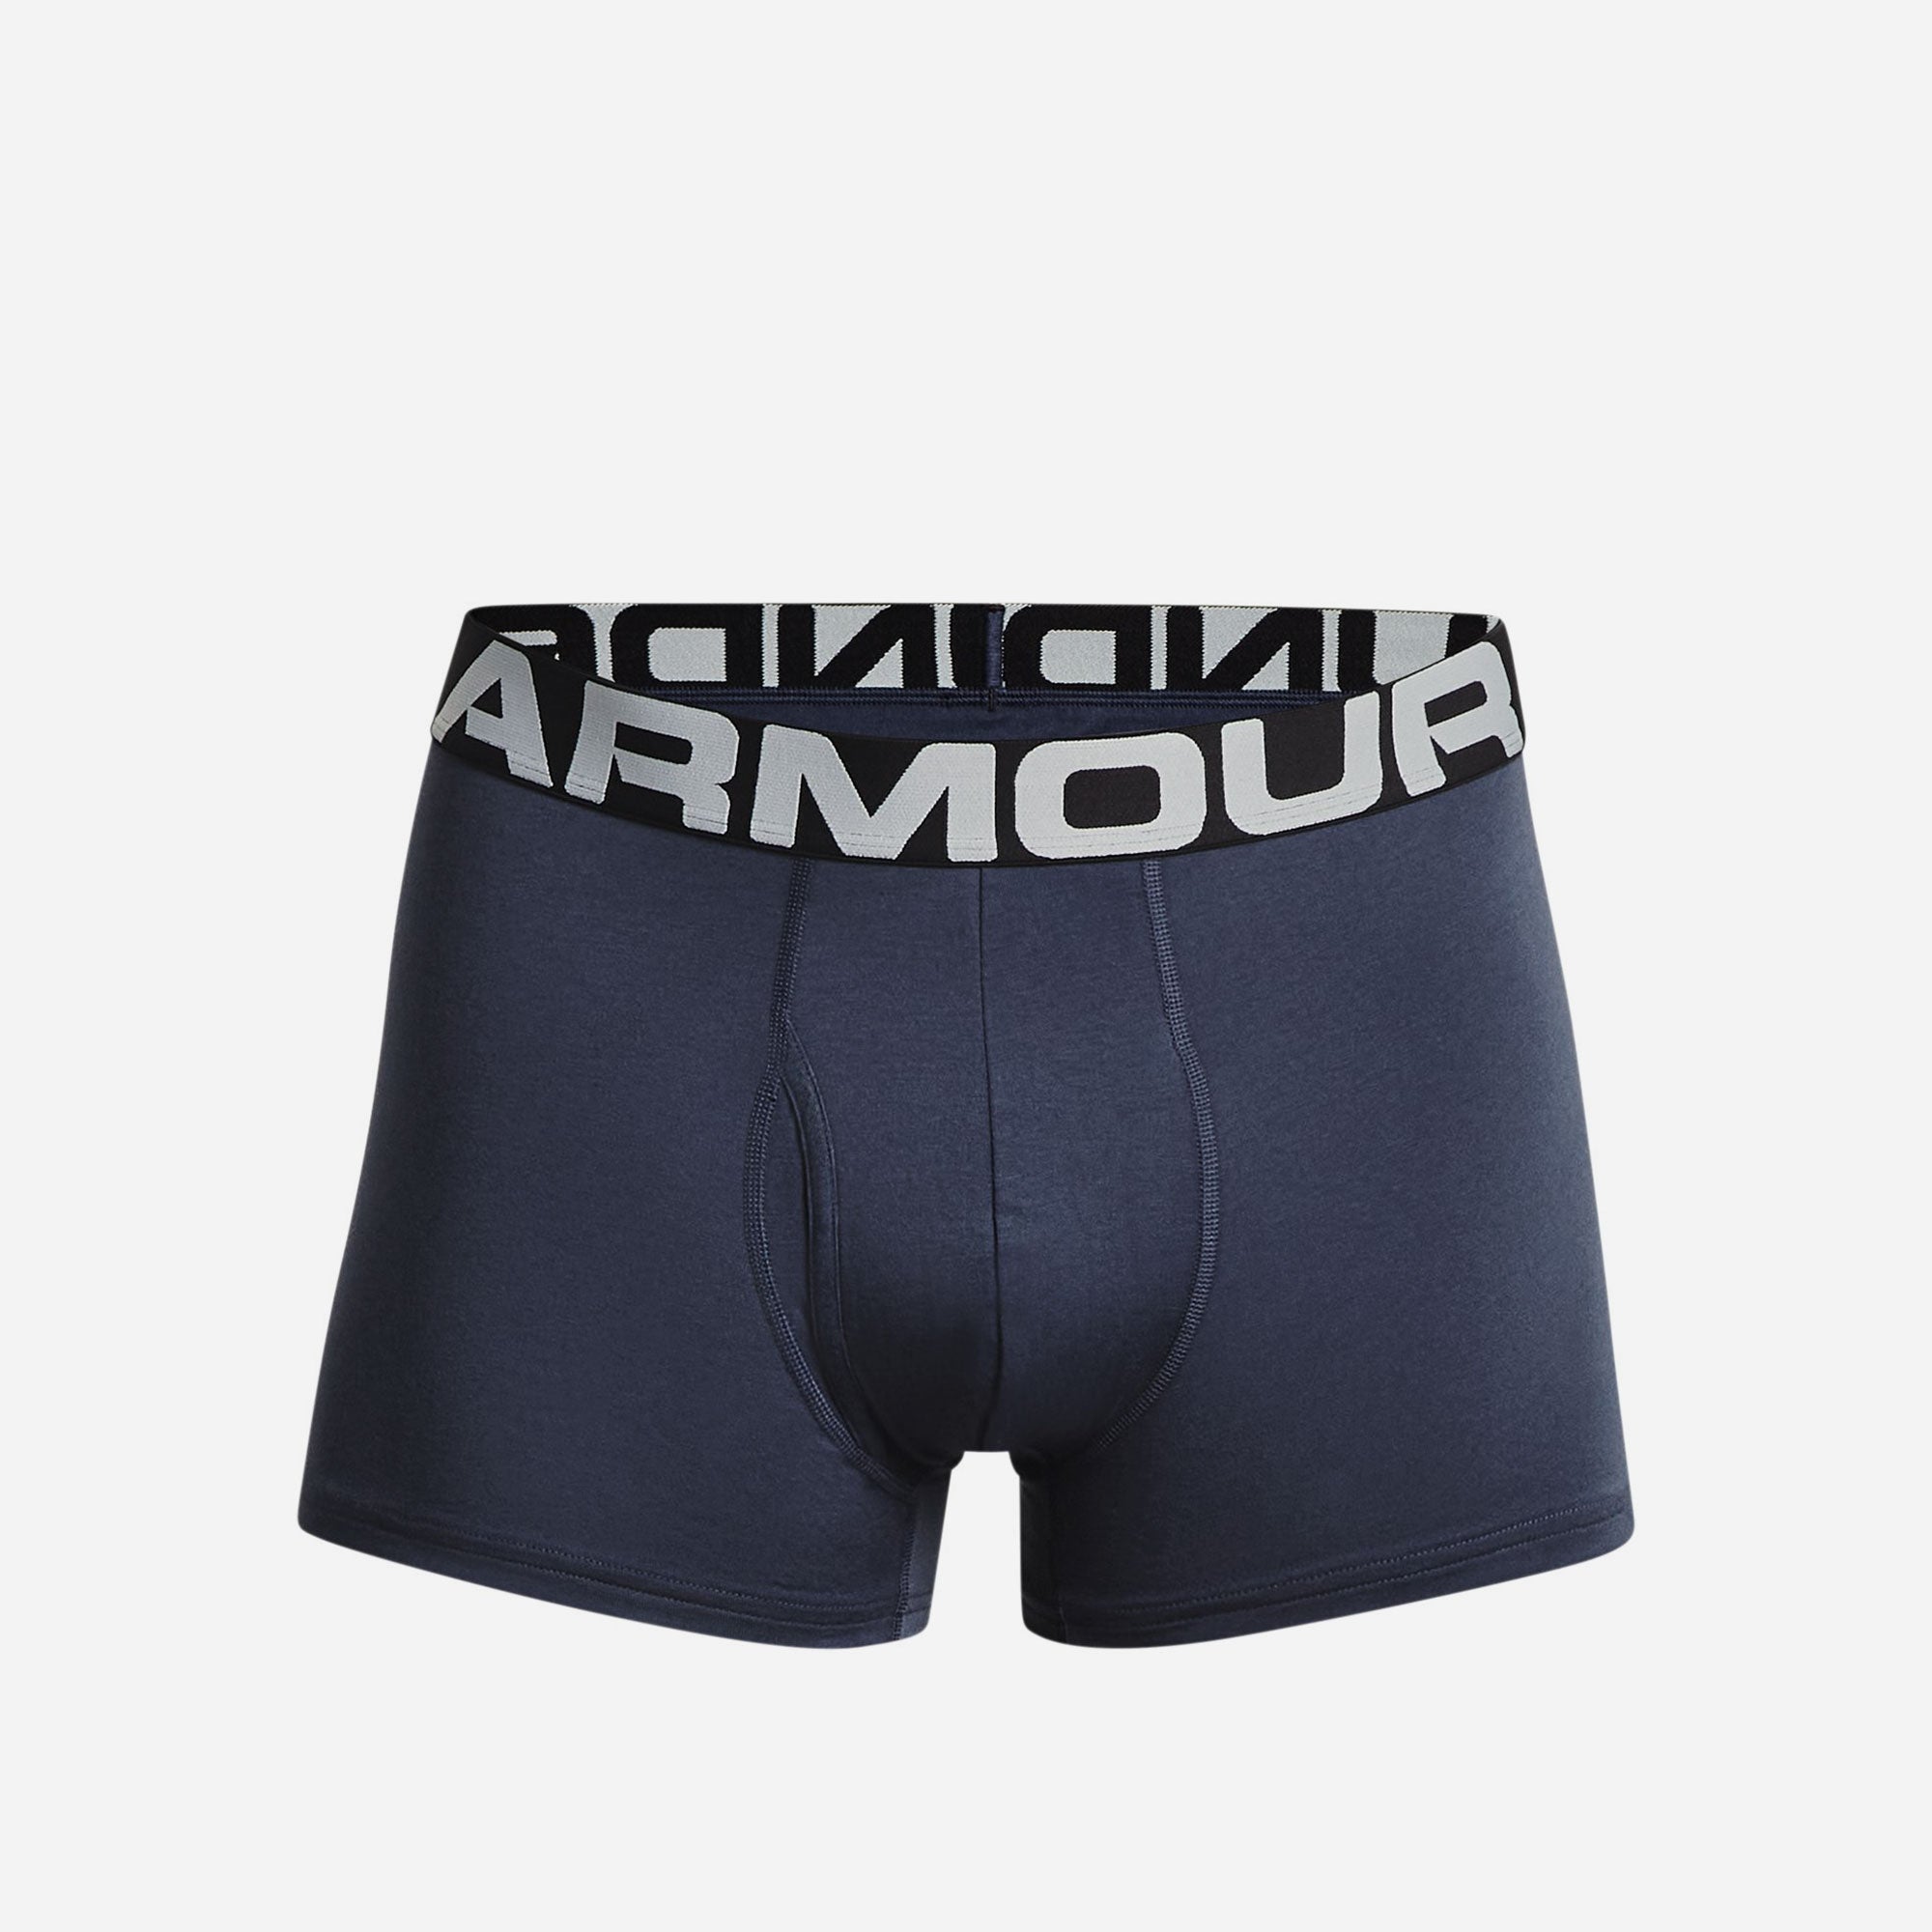 Under Armour Boxerjock Charged Cotton Underwear 3 Pack 6” Inseam Men’s XL  New